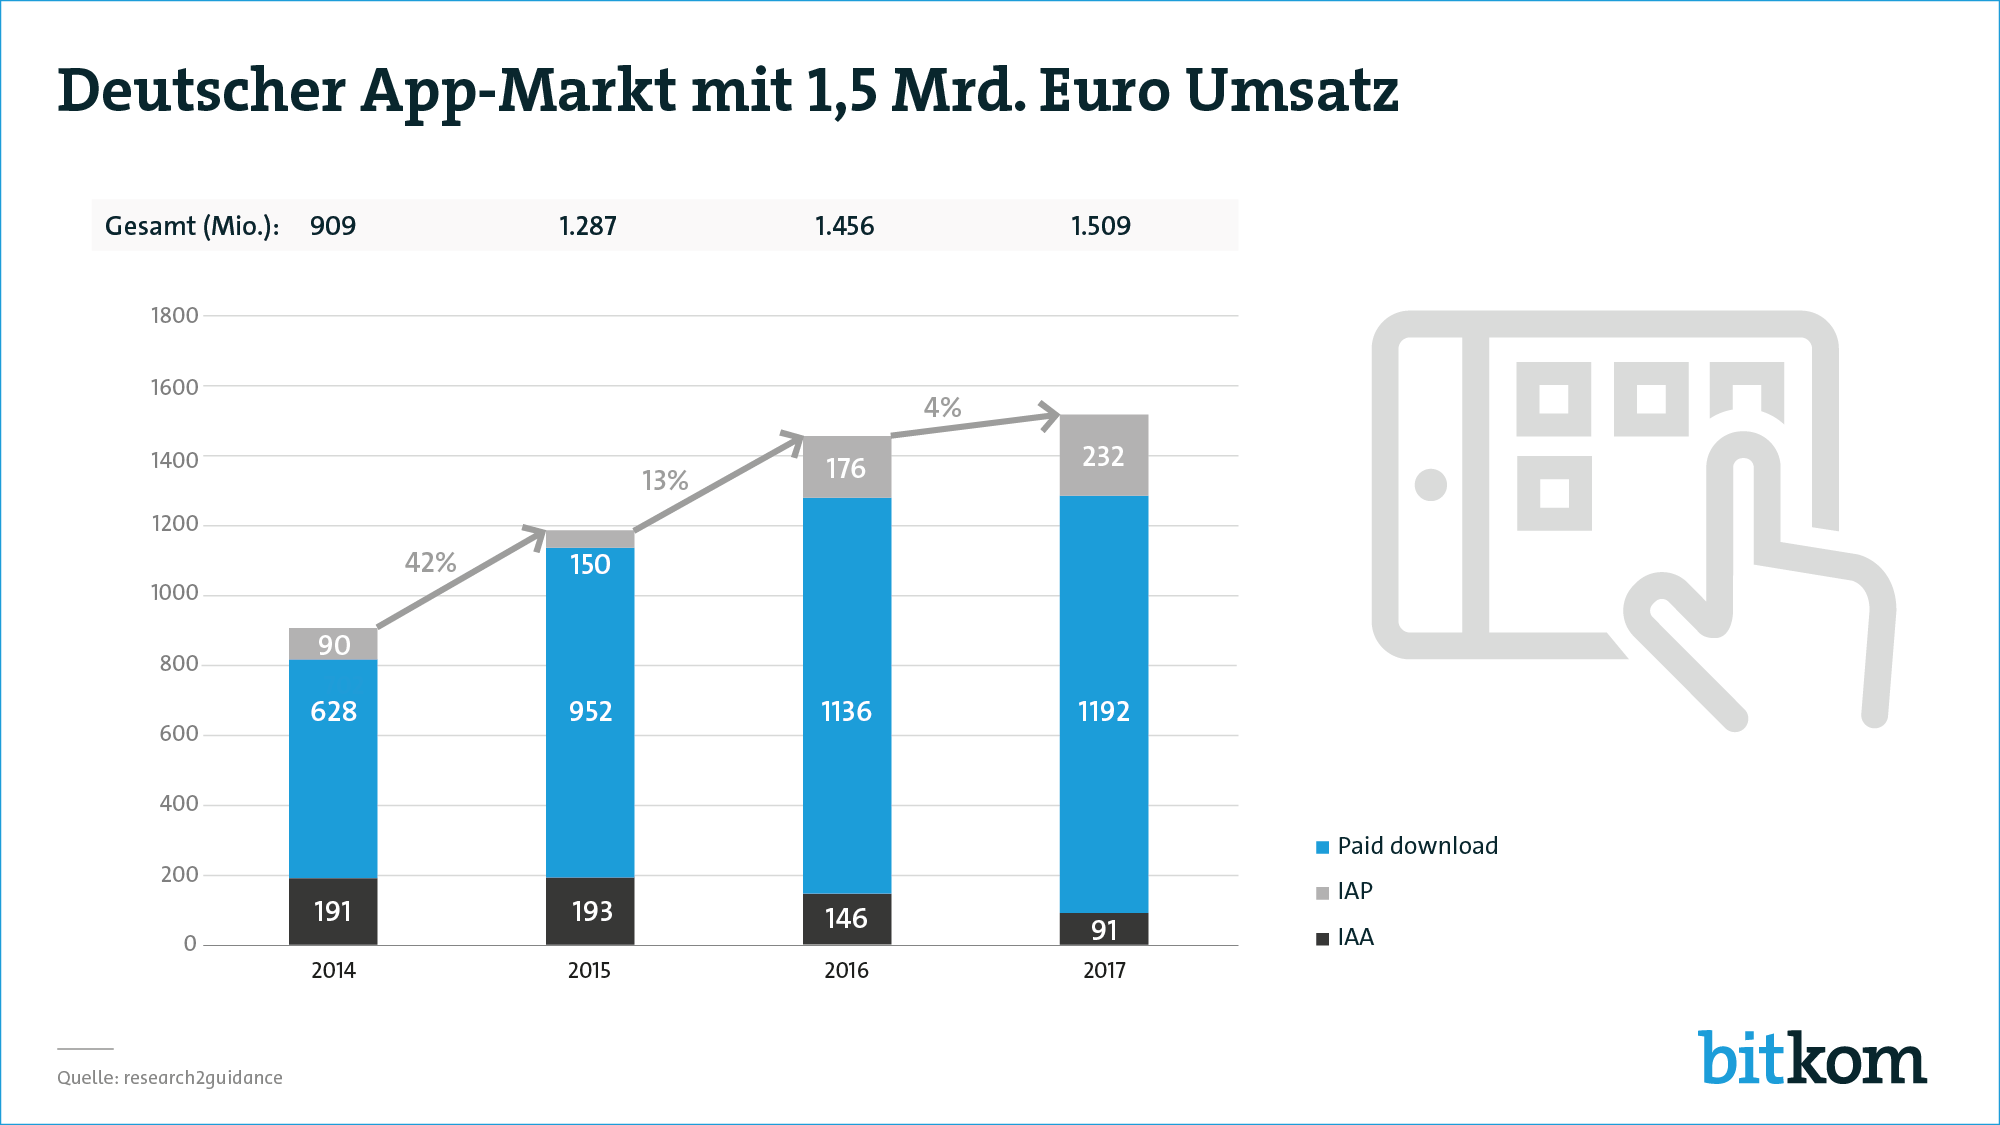 Der deutsche App/Markt wächst - allerdings nicht mehr so stark wie in der Vorjahren. Grafik: Bitkom